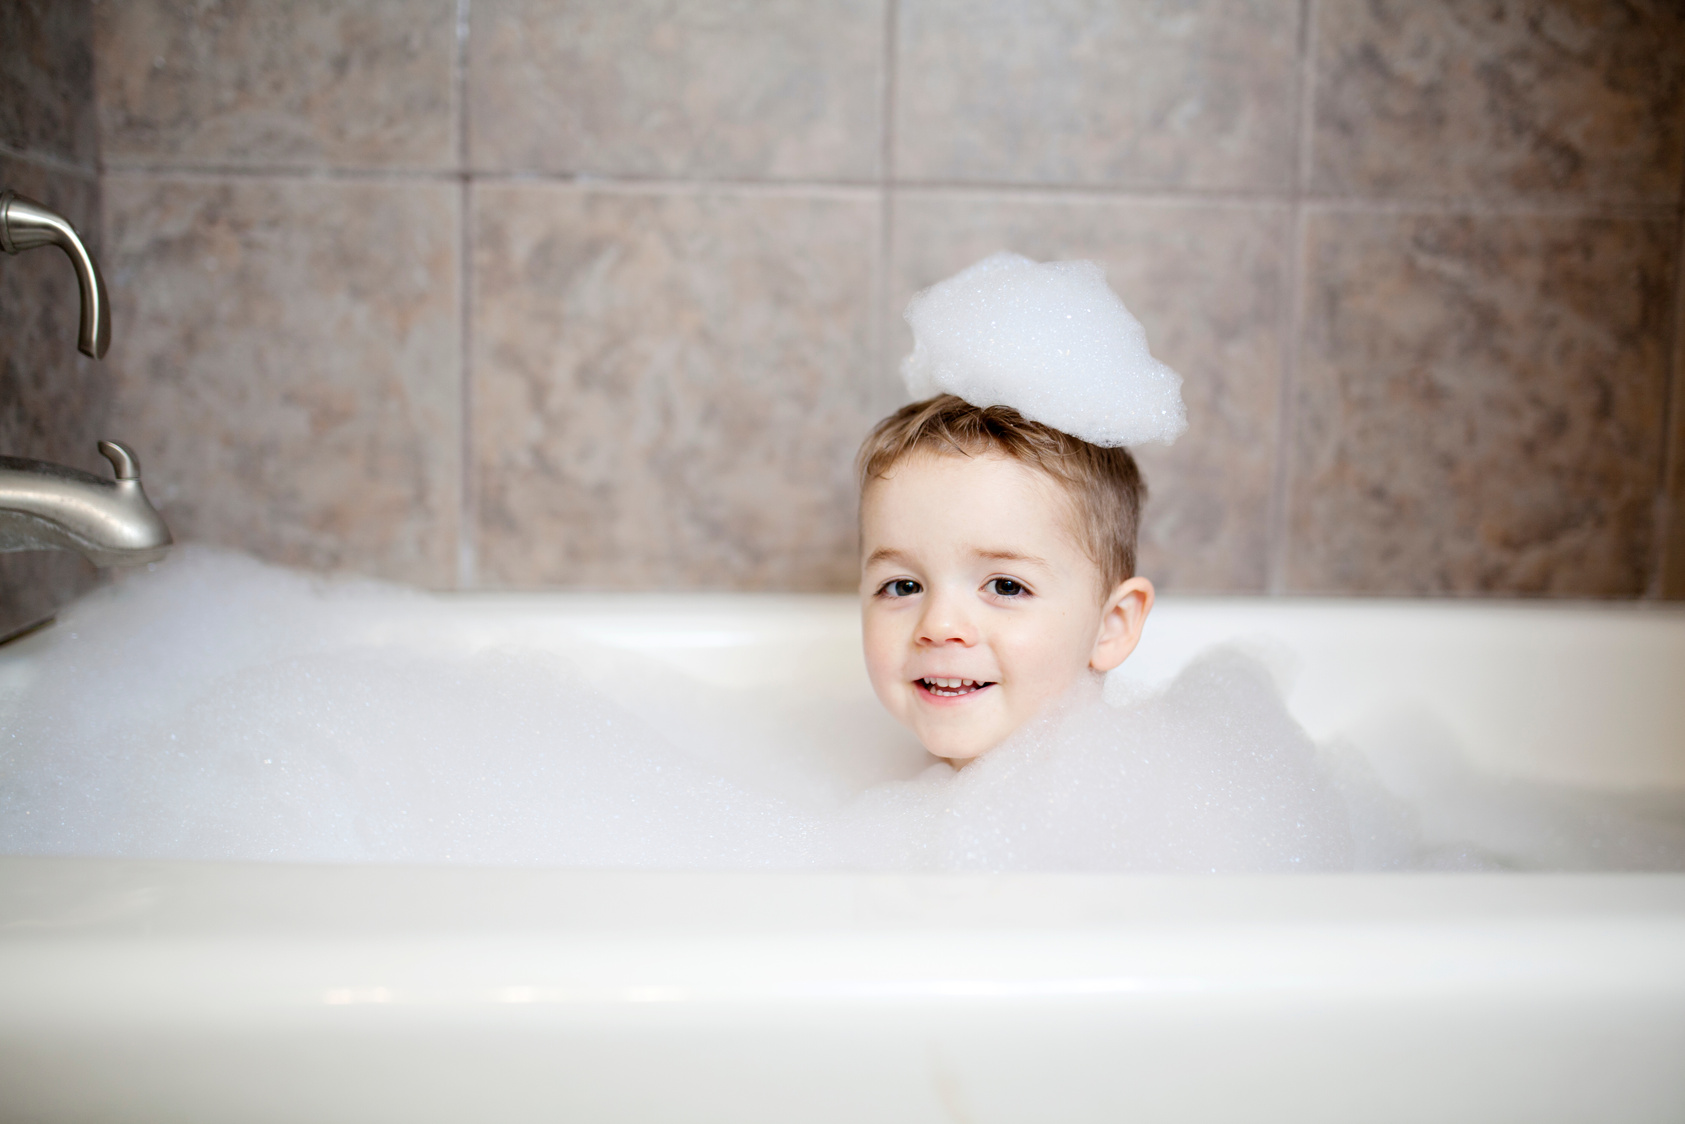 Boy in Bath